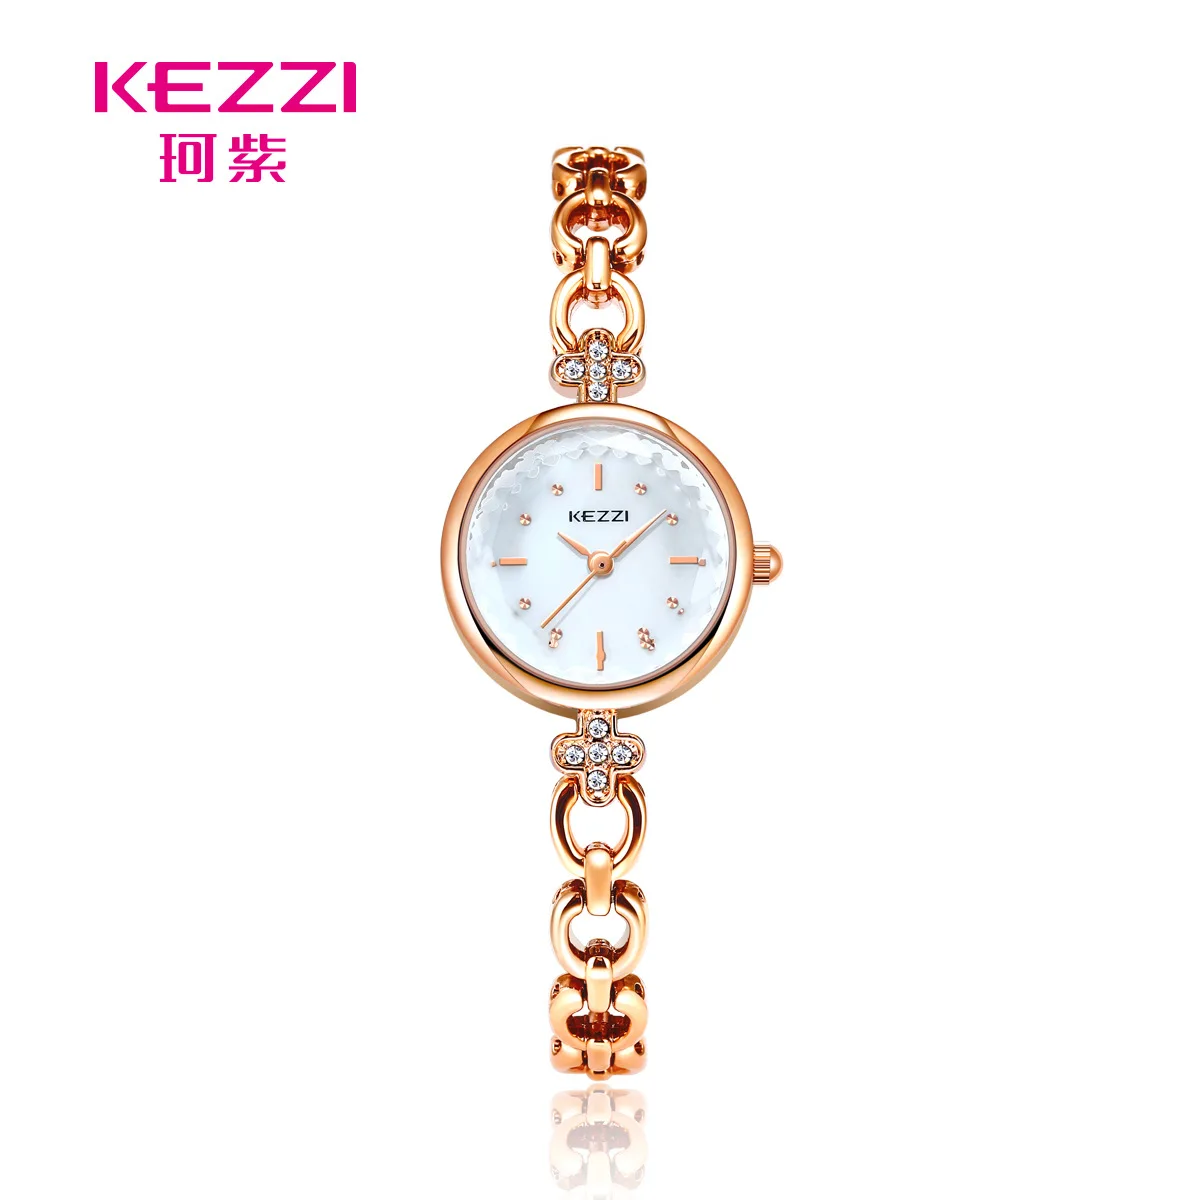 

Часы KEZZI с тонким ремешком для прямой трансляции, новые часы для девушек, женские часы с полубраслетом для студентов